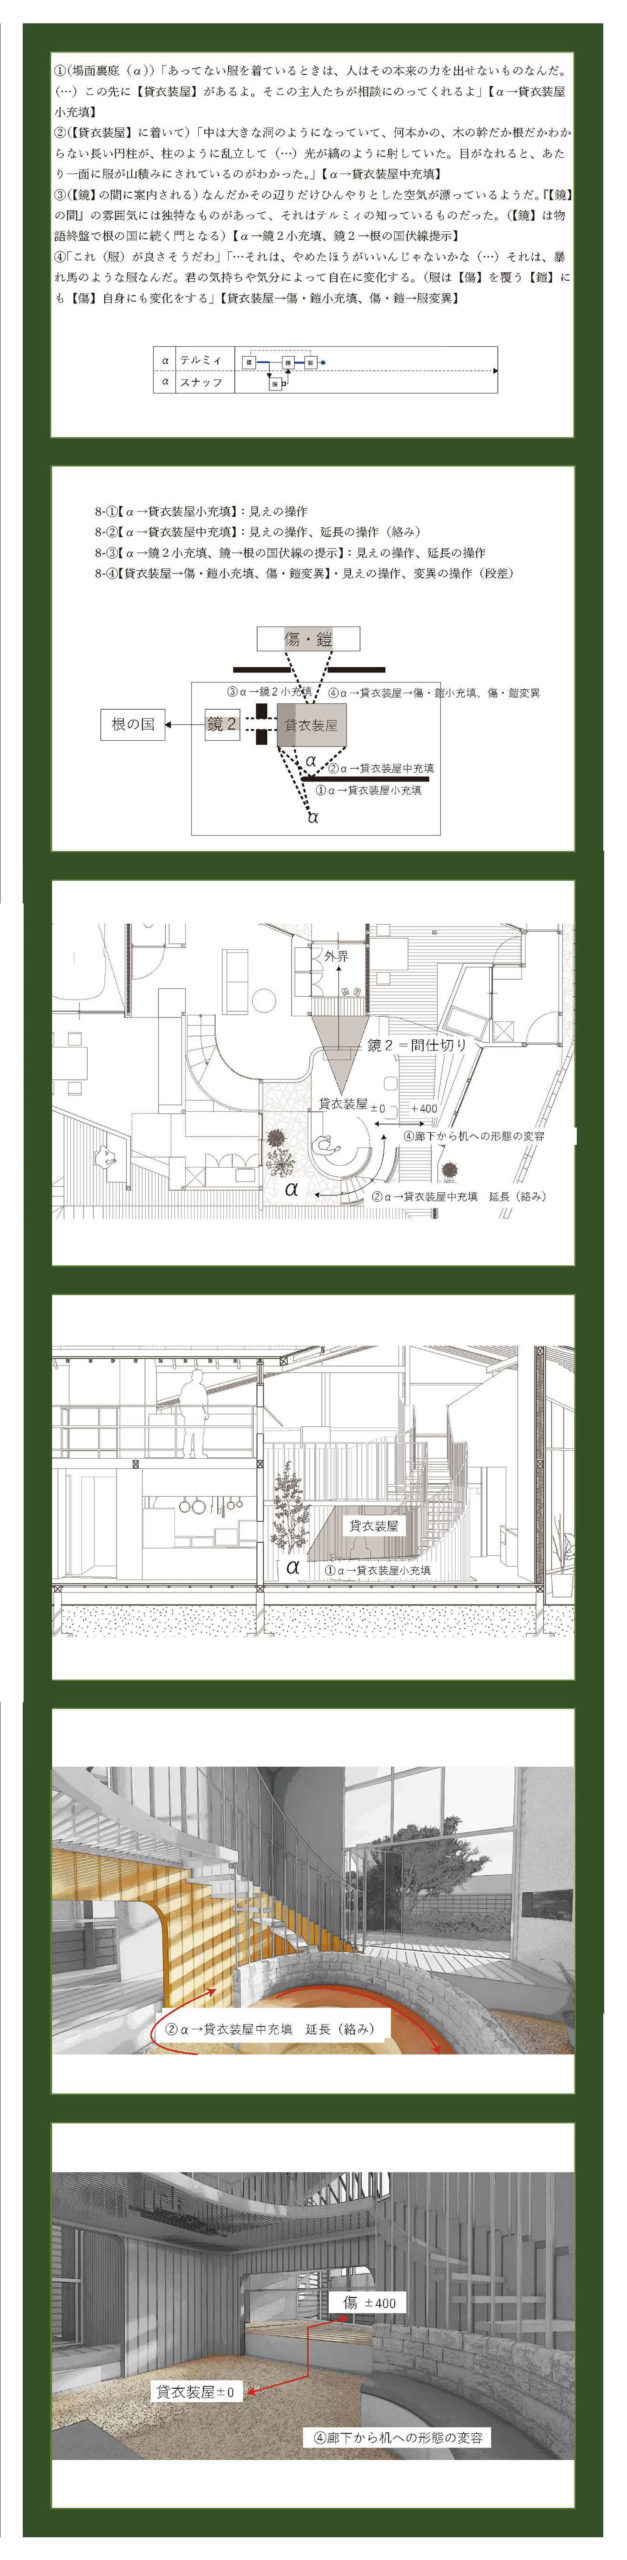 小説構造を応用した建築の提案 -梨木香歩『裏庭』の分析を通して--10